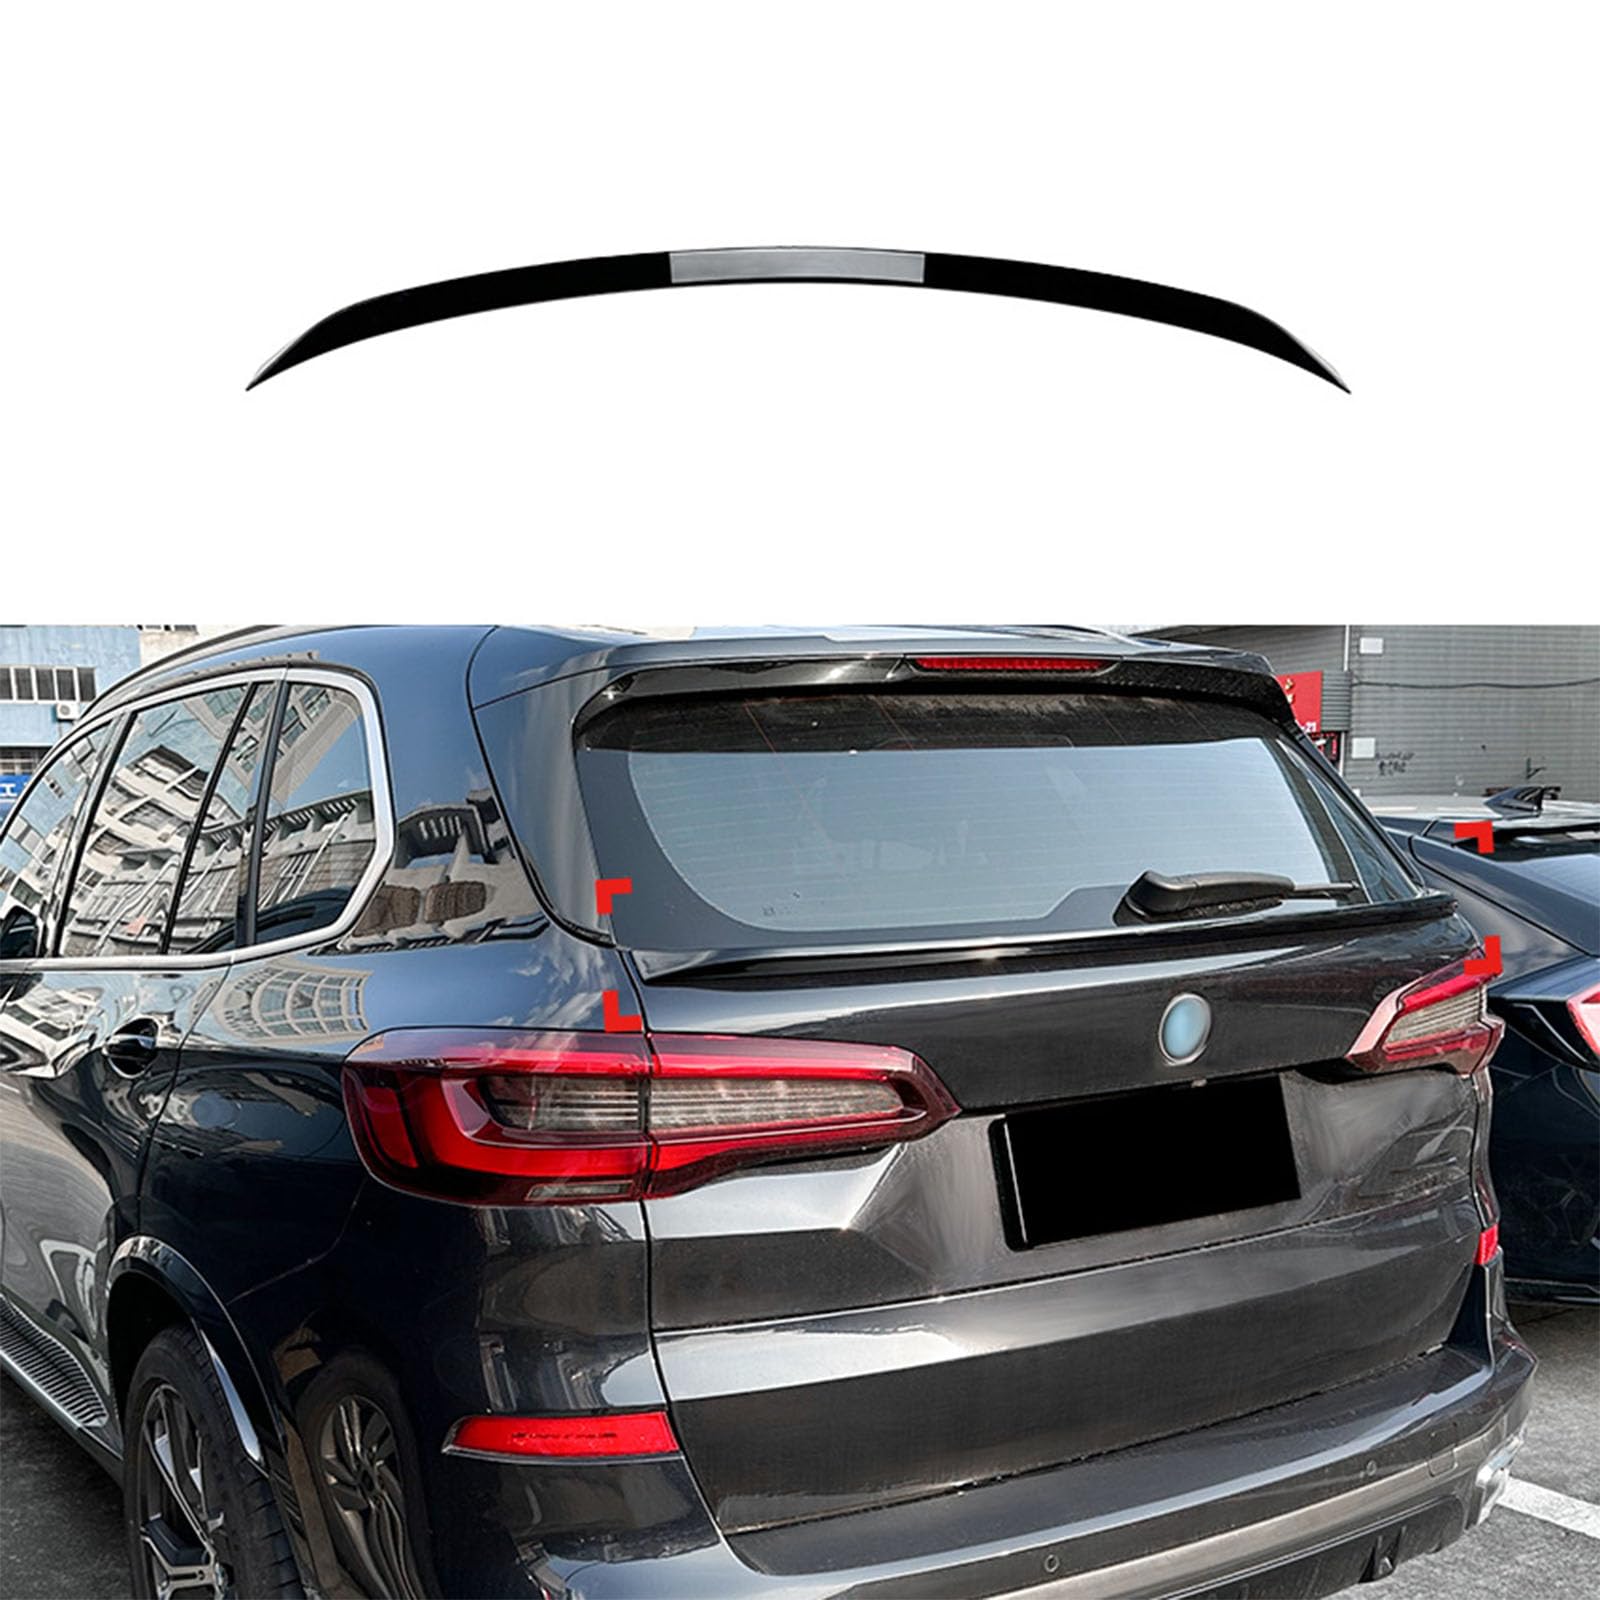 Kompatibel für BMW X5 G05 2019+, Auto Heckspoiler Heckklappen Kofferraumdeckelflügel Styling Kits Autozubehör Karosseriedekoration,A Gloss Black von GODSLLY